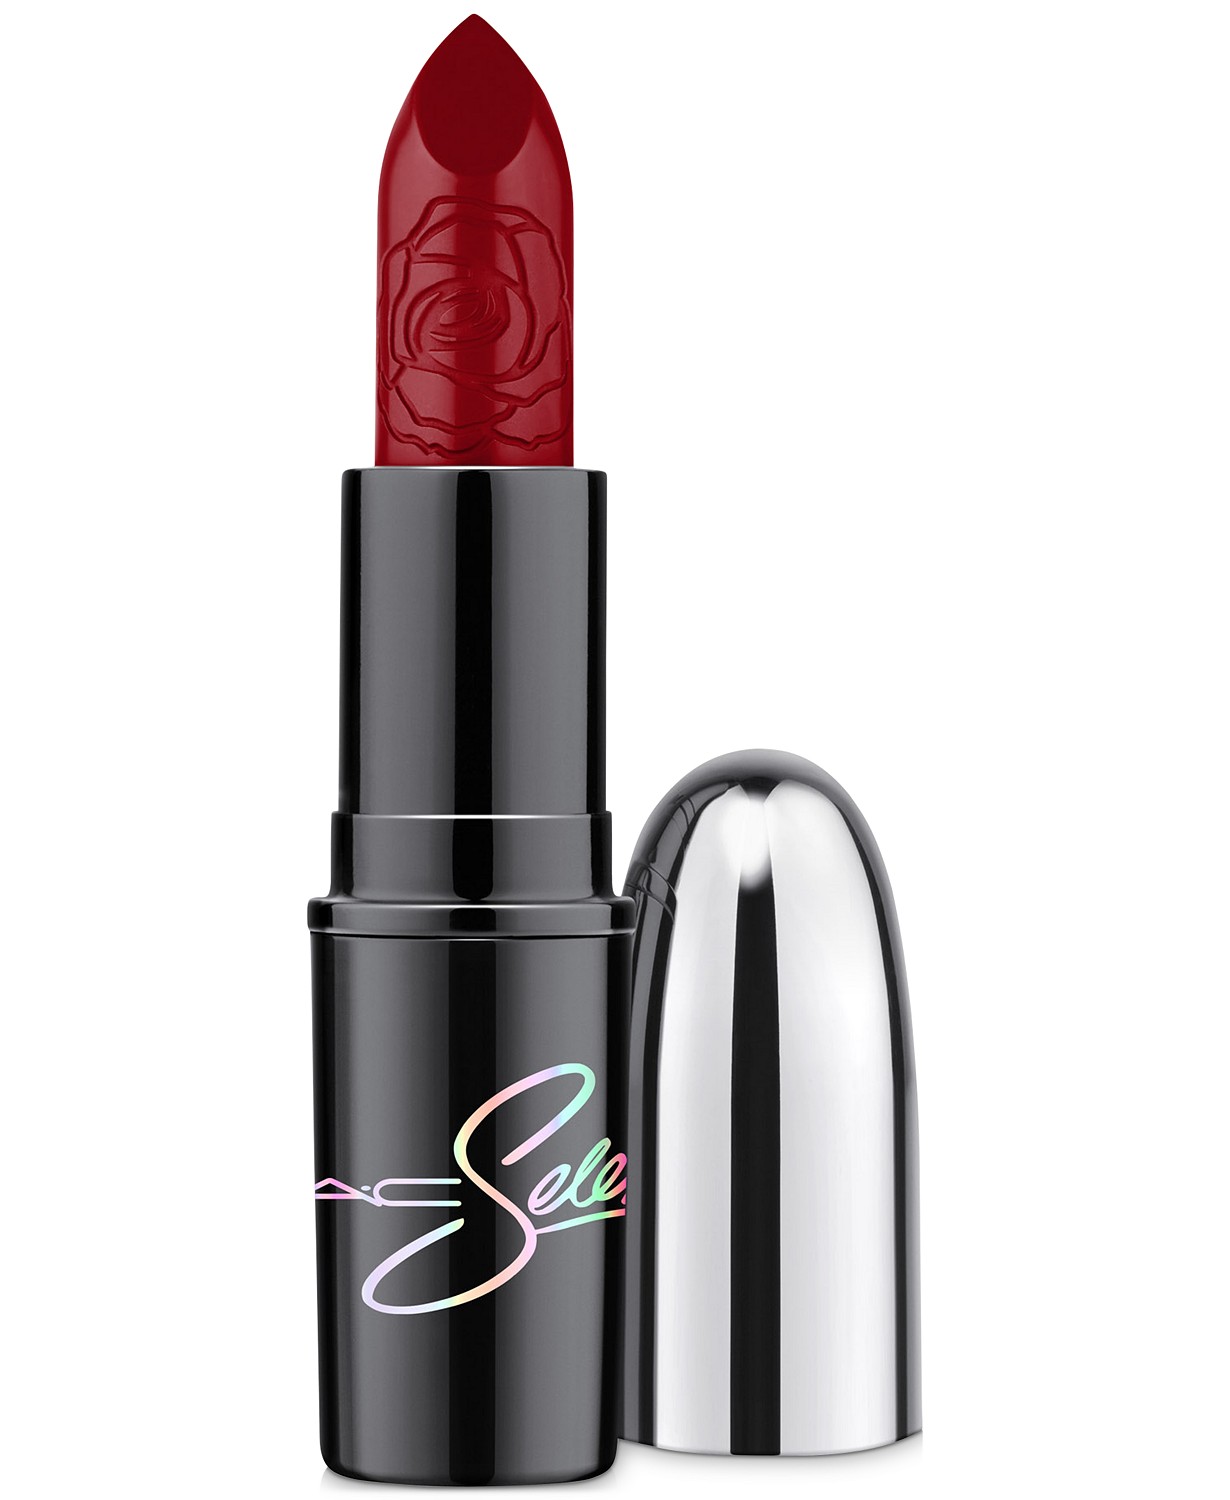 (30% OFF Deal) Mac Selena La Reina Lipstick $14.00